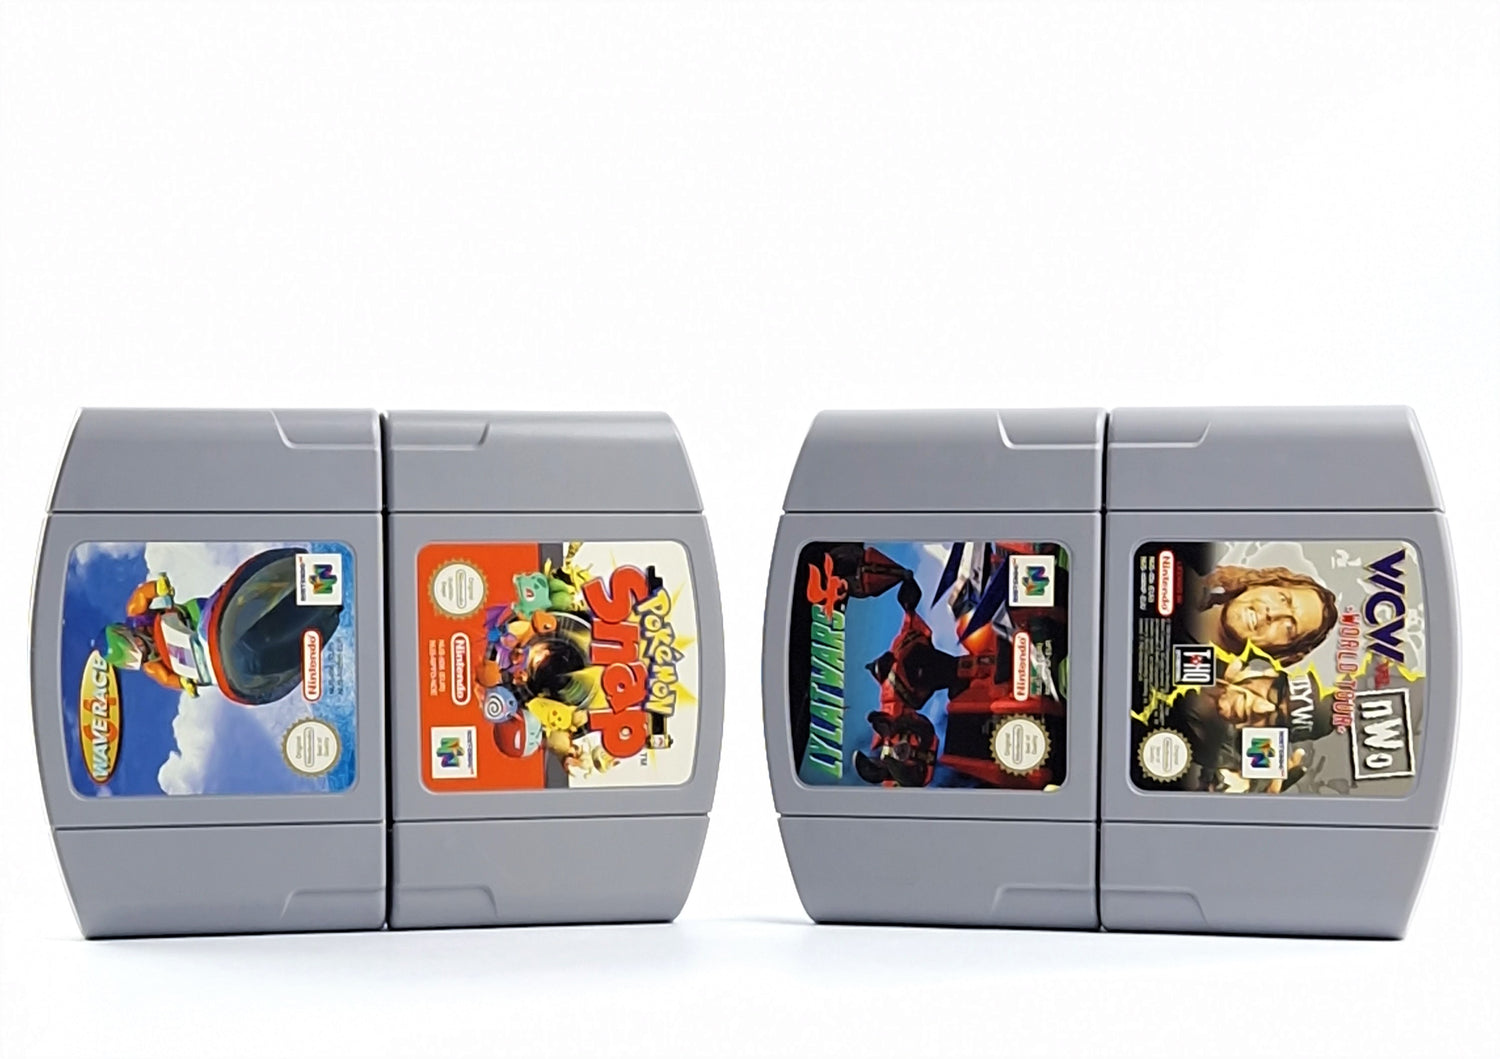 Nintendo 64 Games Bundle: 4 Games Set - Waverace | Pokemon | Lylatwars | WCW